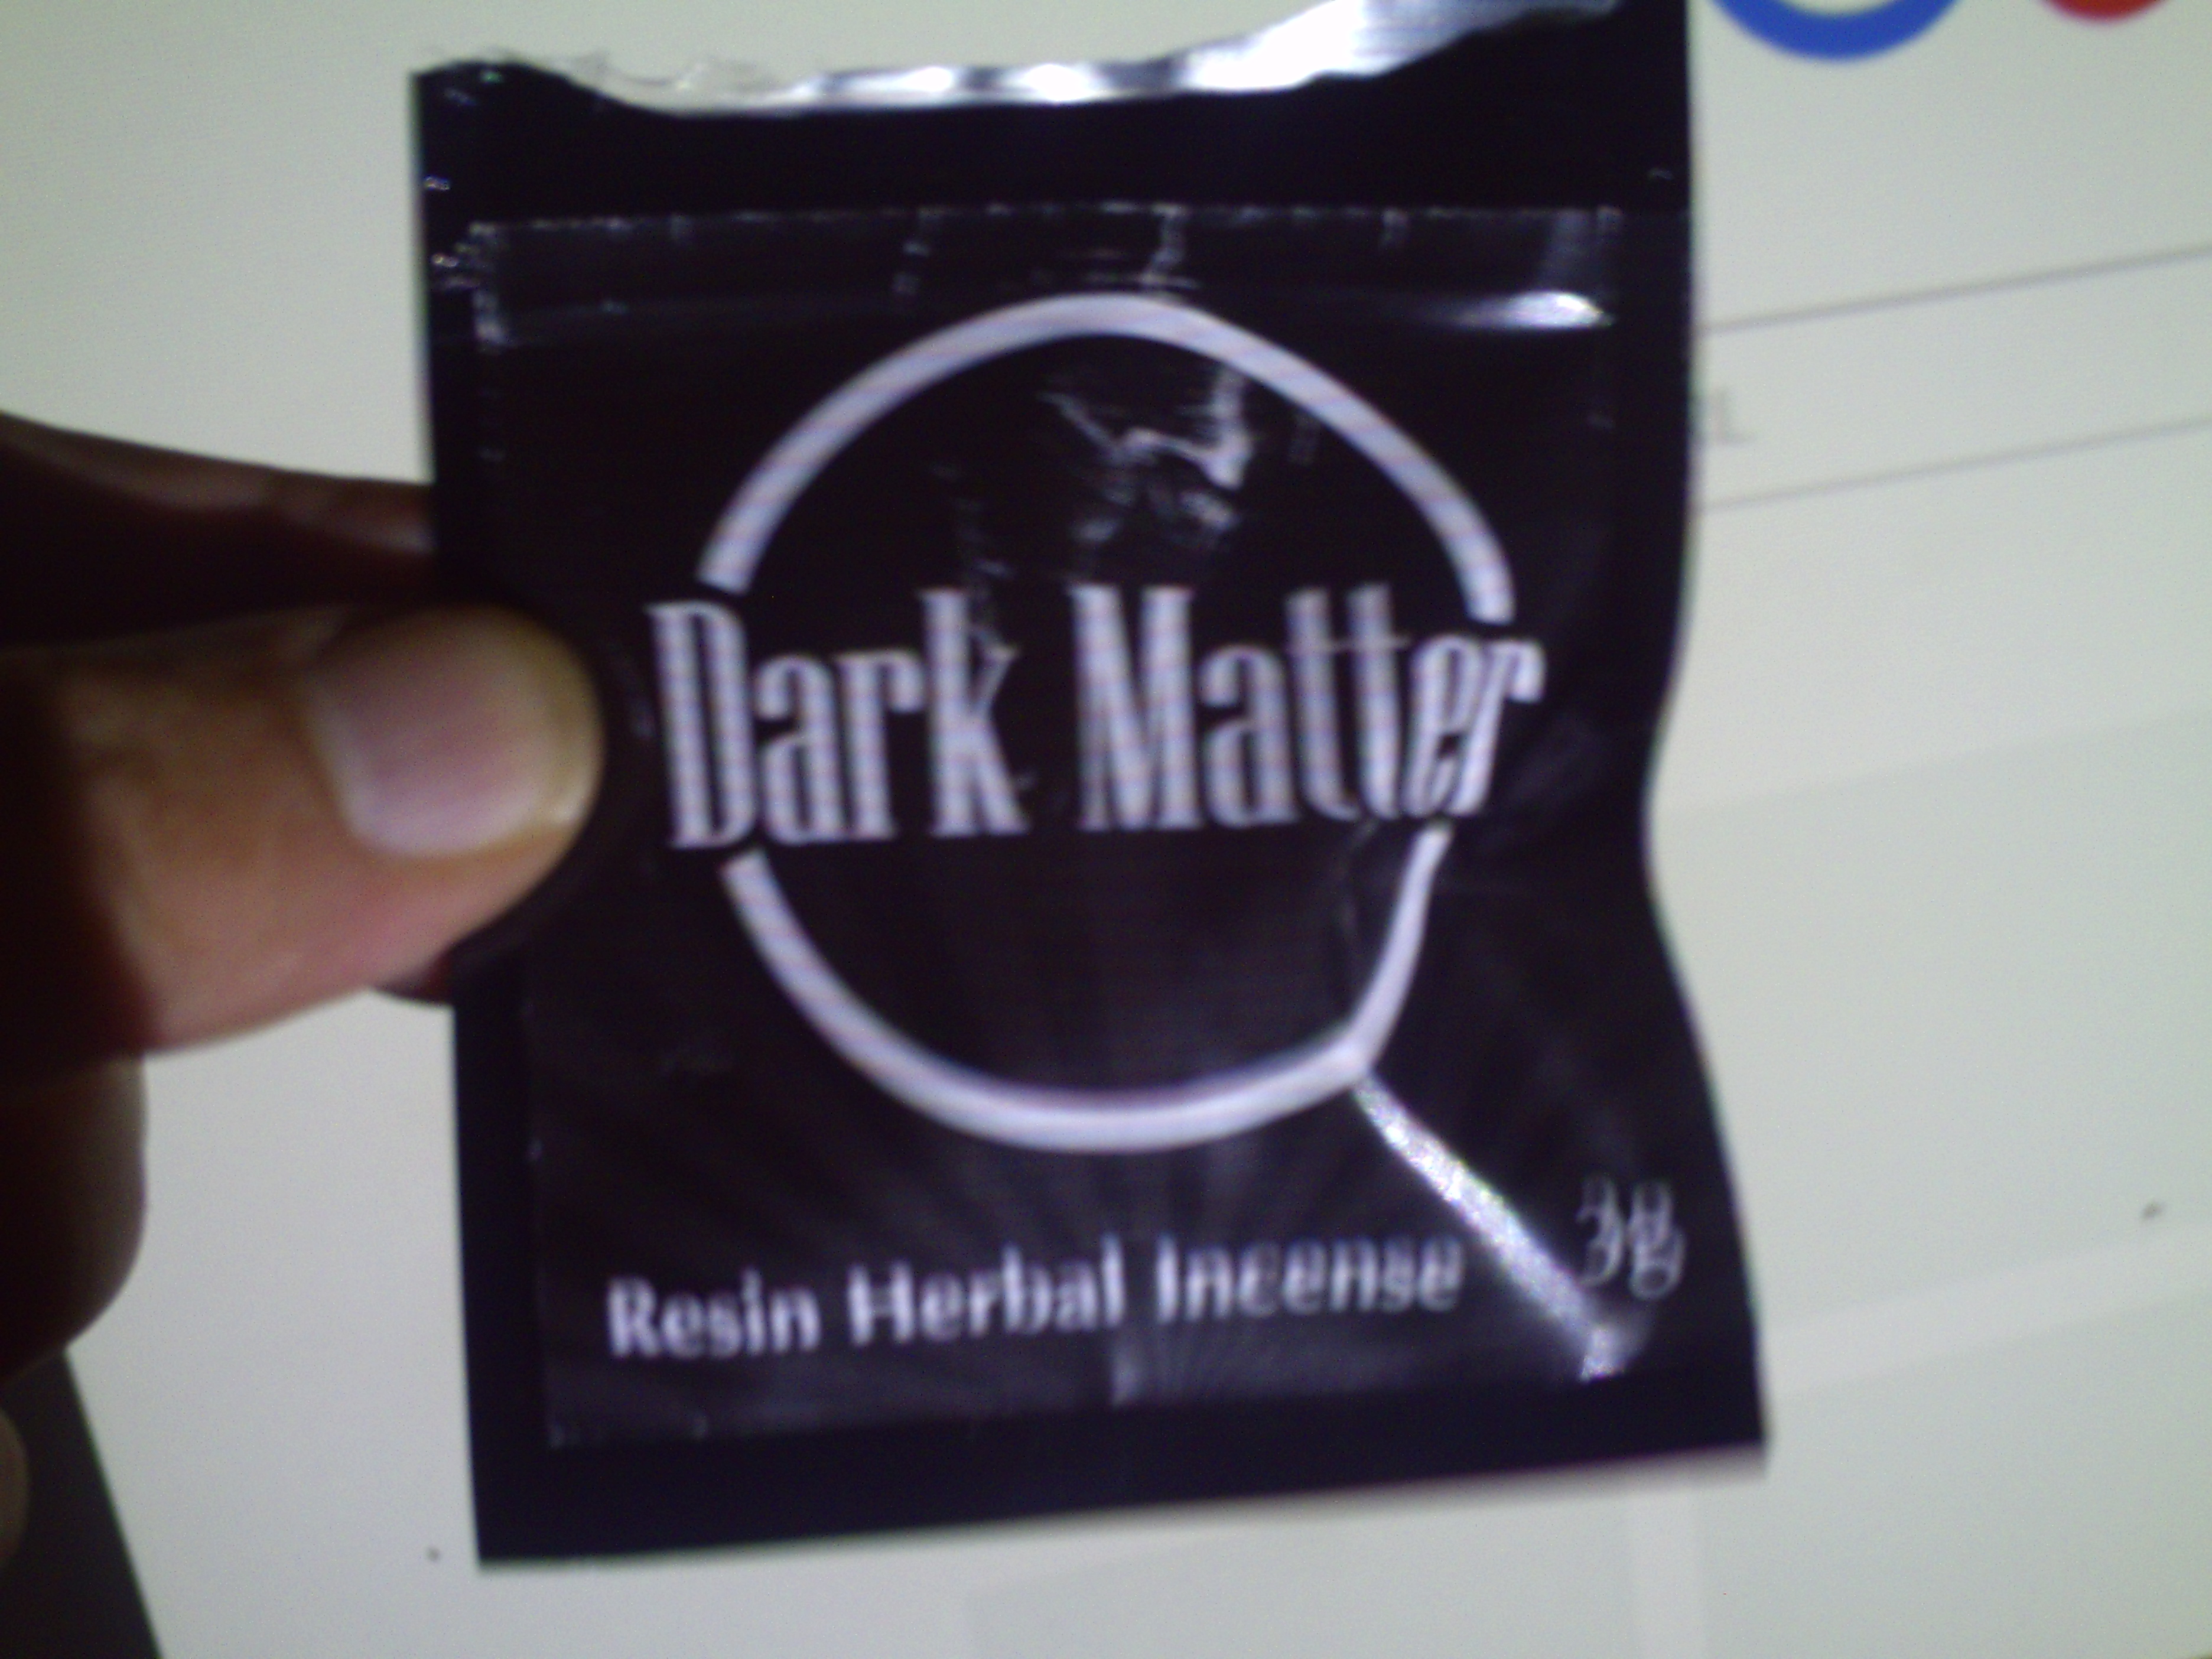 Dark Matter review